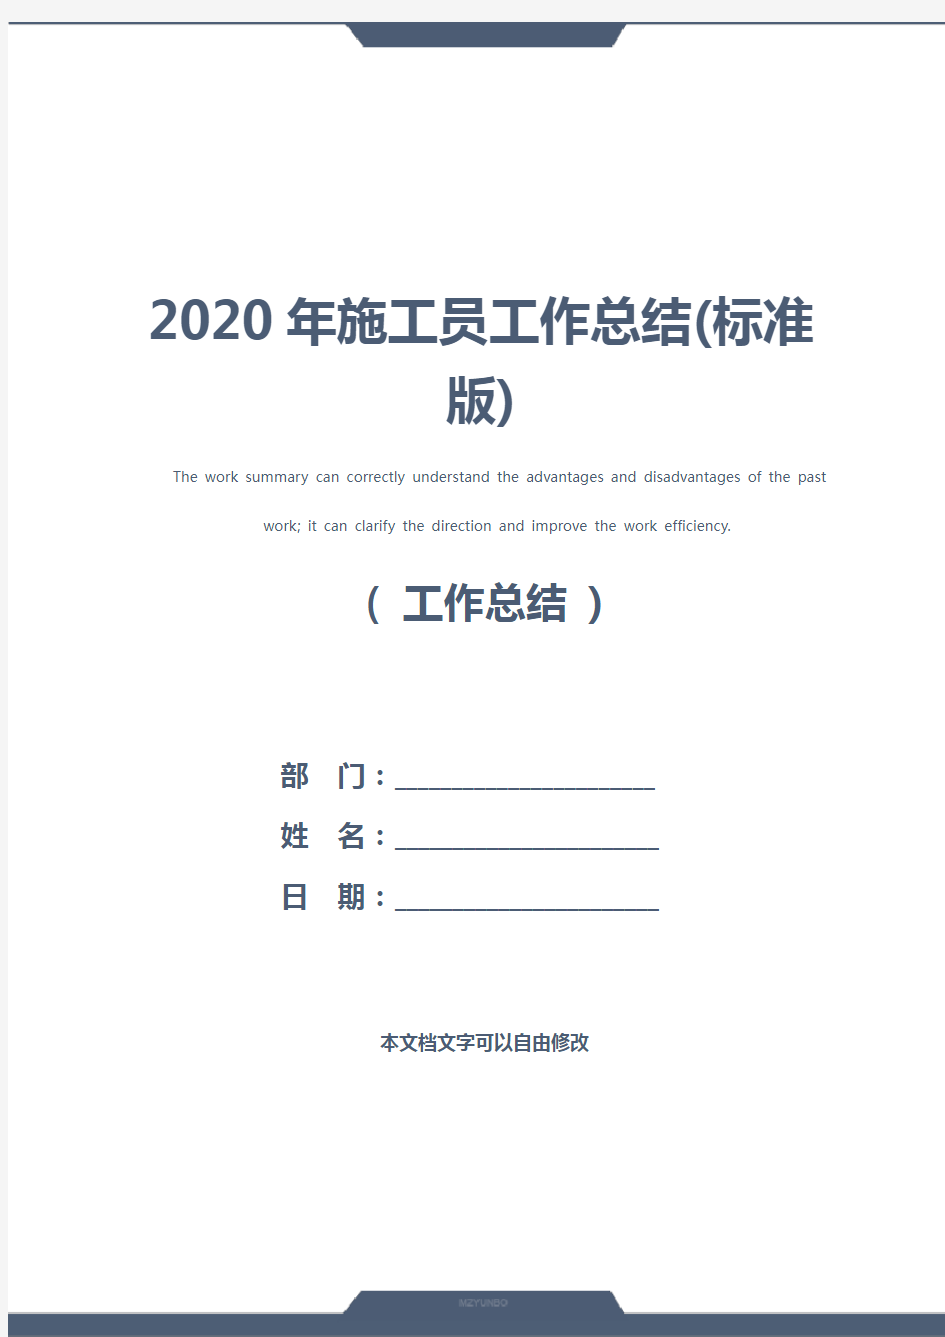 2020年施工员工作总结(标准版)